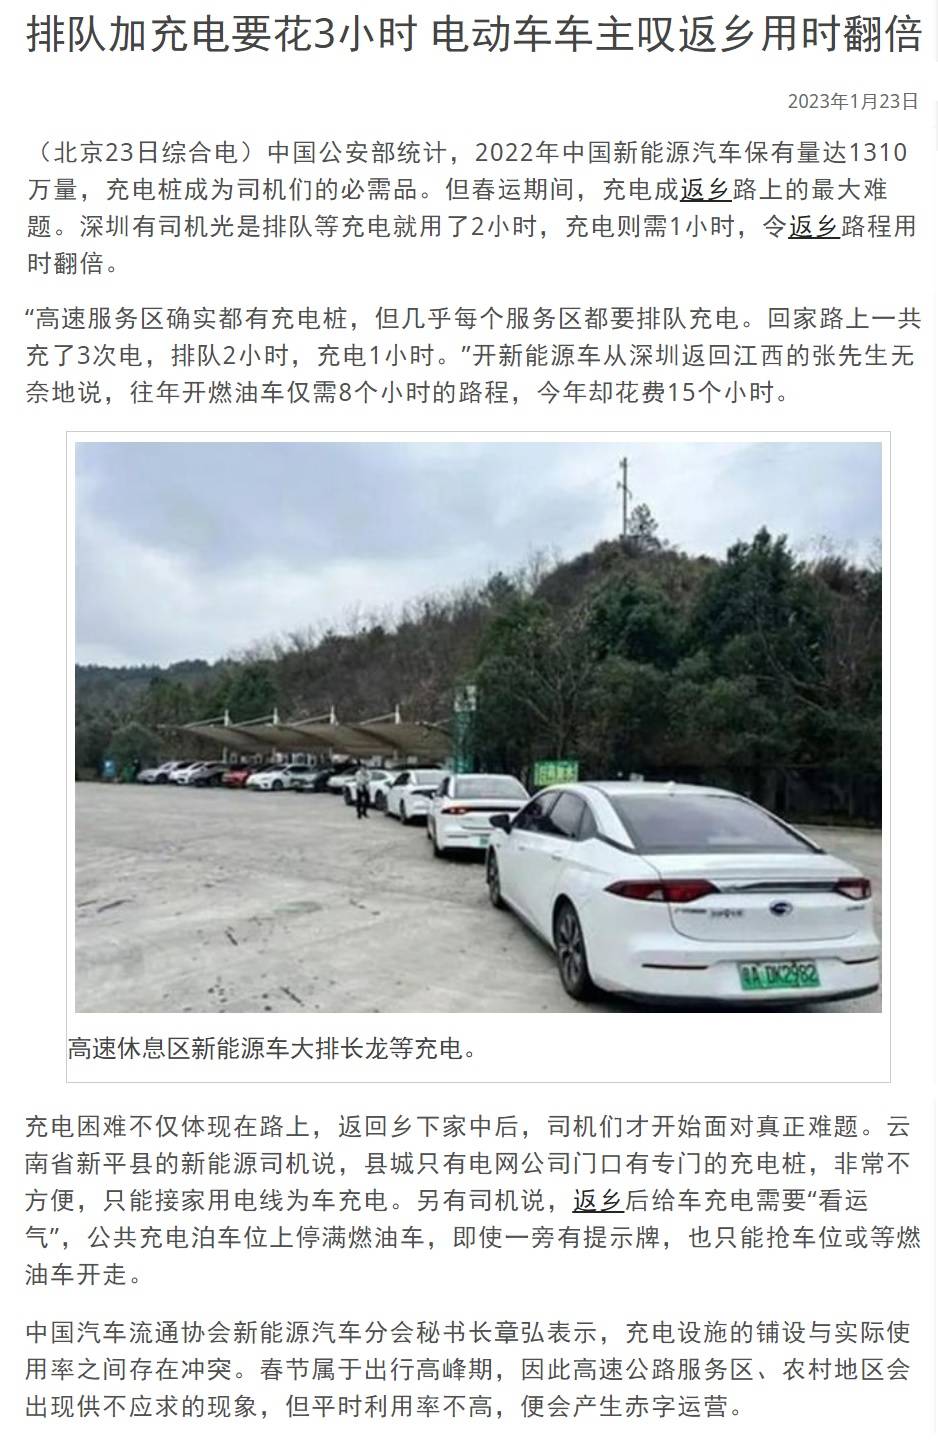 China Fake EV 06.jpg